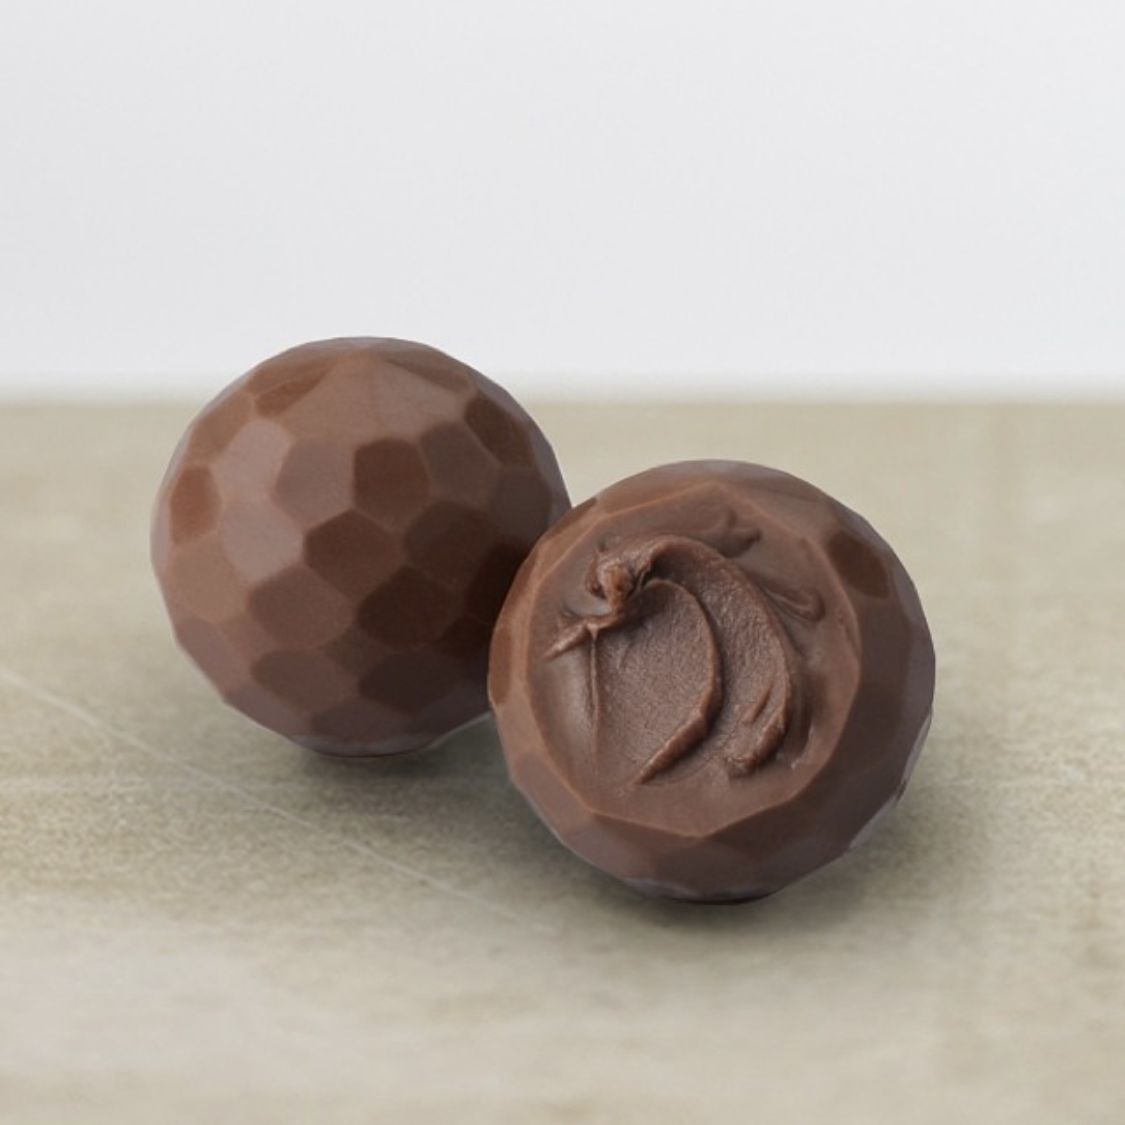 Шоколадные конфеты Delaviuda из молочного шоколада с карамелью 150г